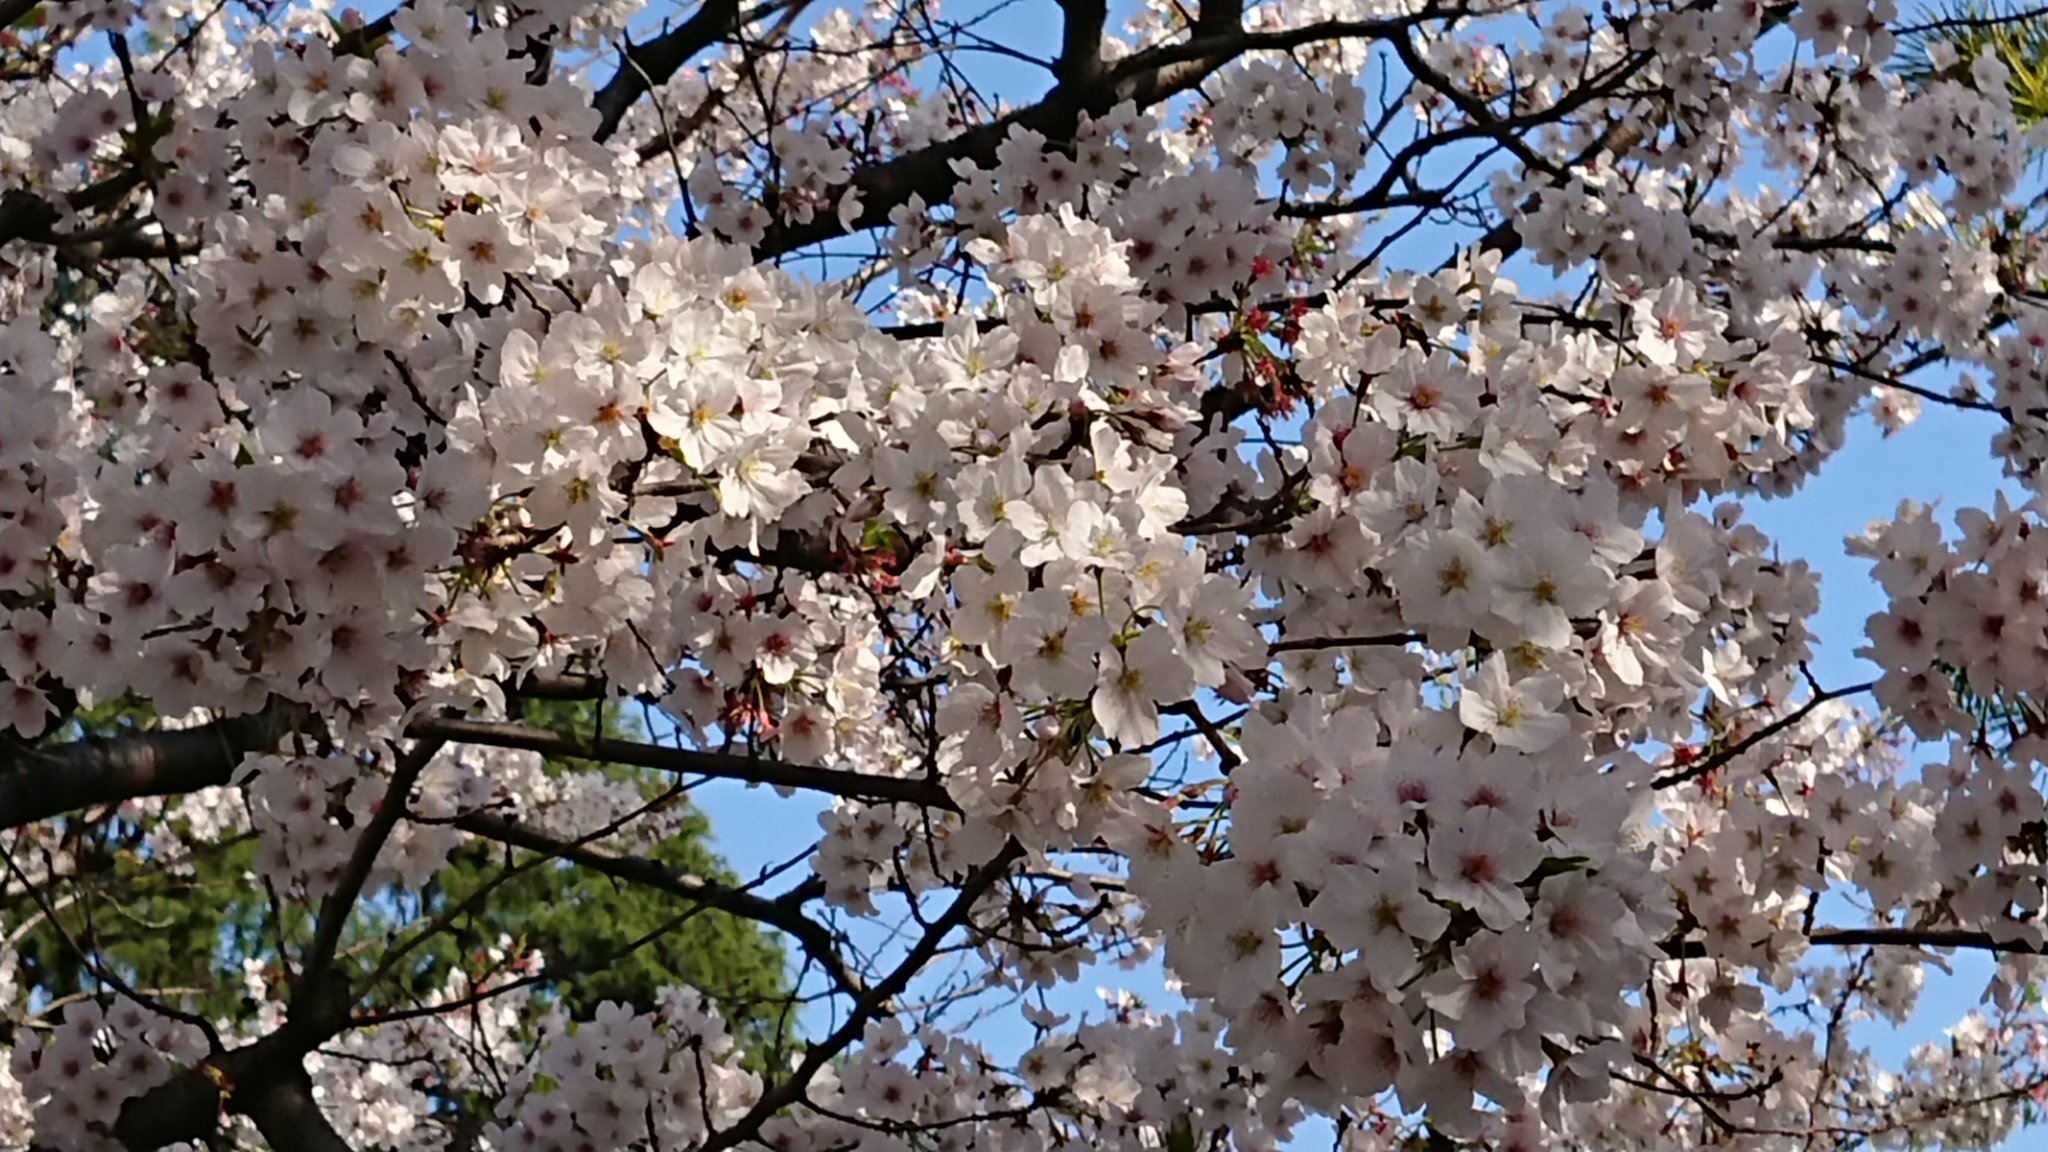 Makiemon 残っている桜を見ながらお散歩 O W Oﾃｸﾃｸ 陽が当たっているところは 暑いくらいでした 仕事もお休みになって のんびりした週末で 何だかコロナ騒ぎがウソみたい O